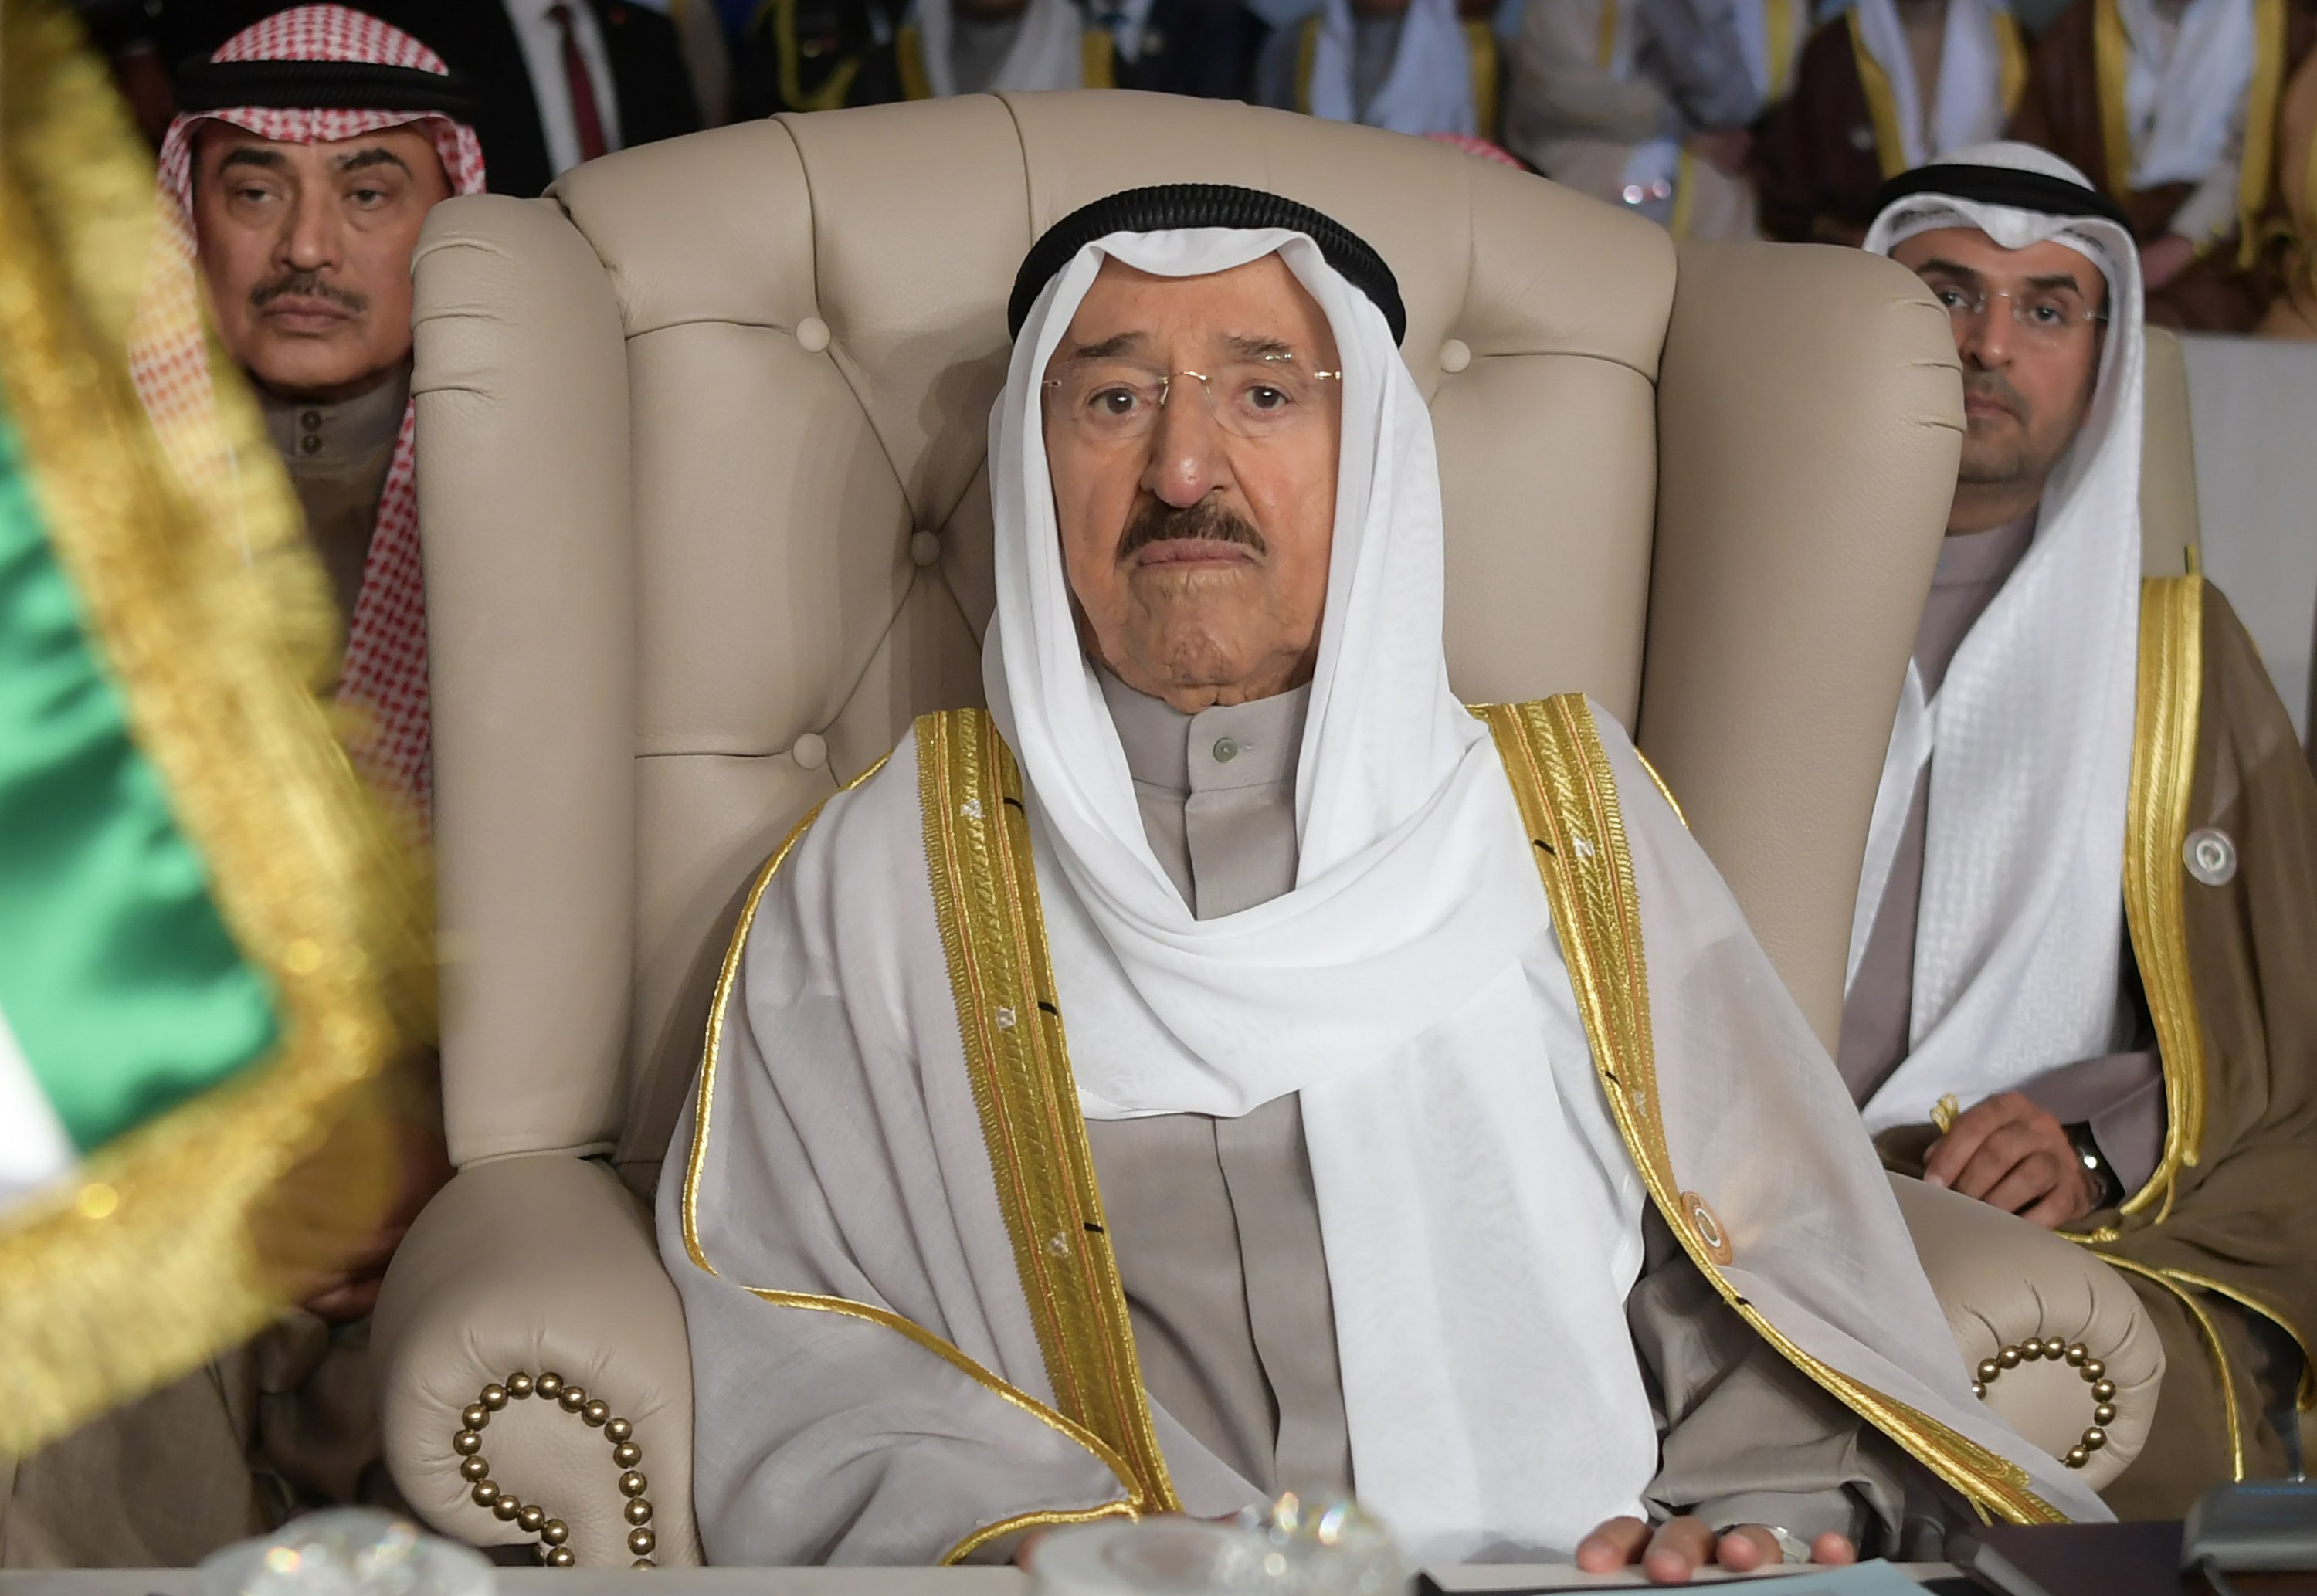 الزعيم الكويتي 91 عاما يخضع لعملية جراحية “ناجحة”